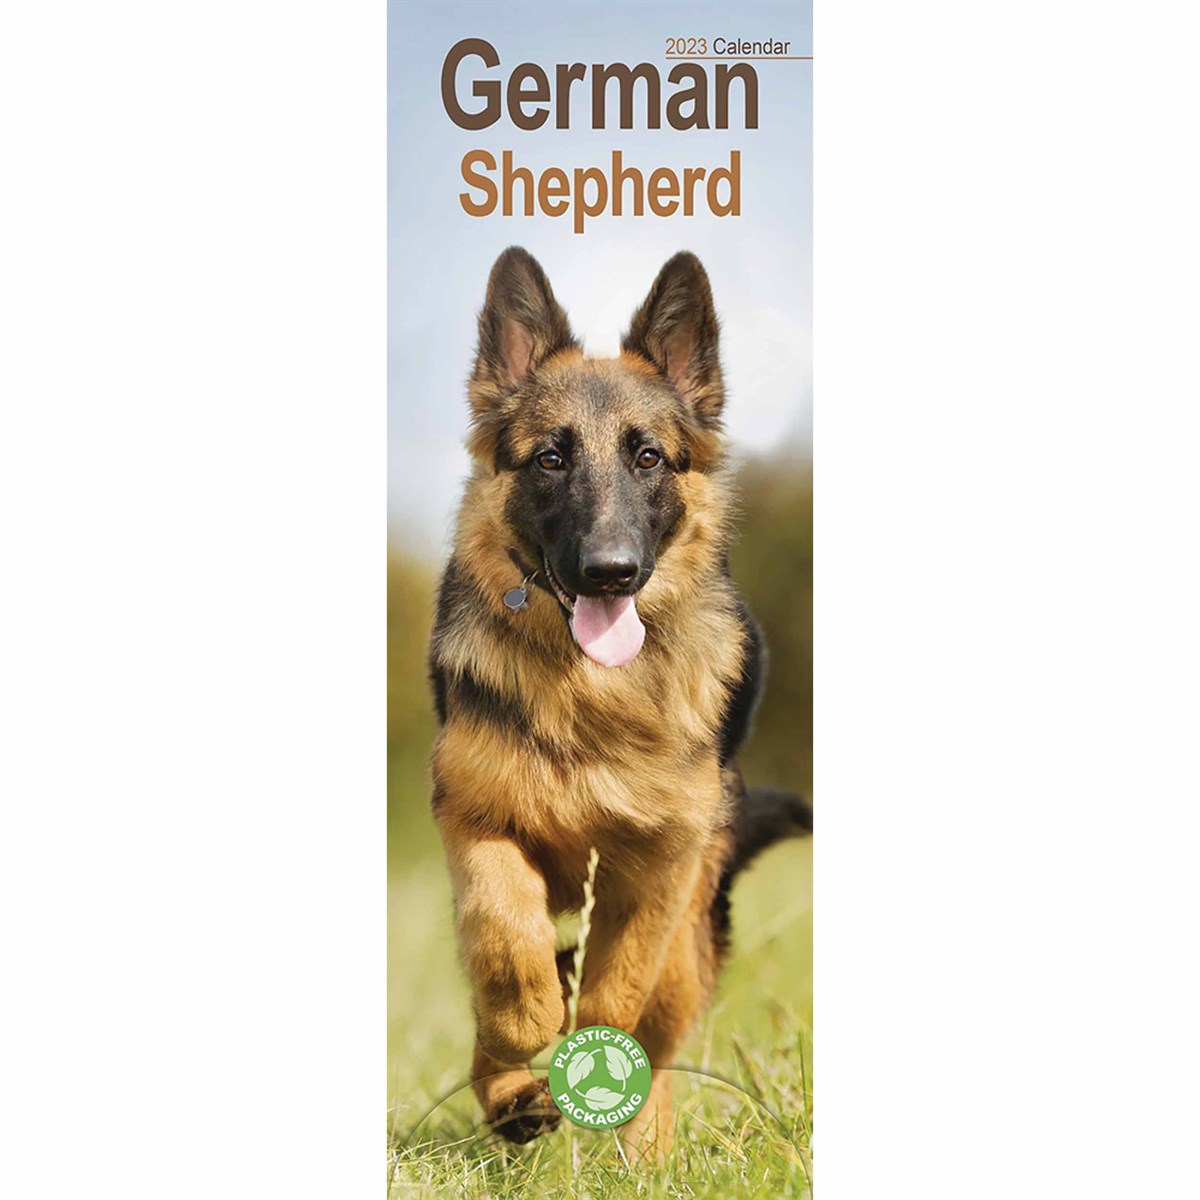 German Shepherd Slim 2023 Calendars